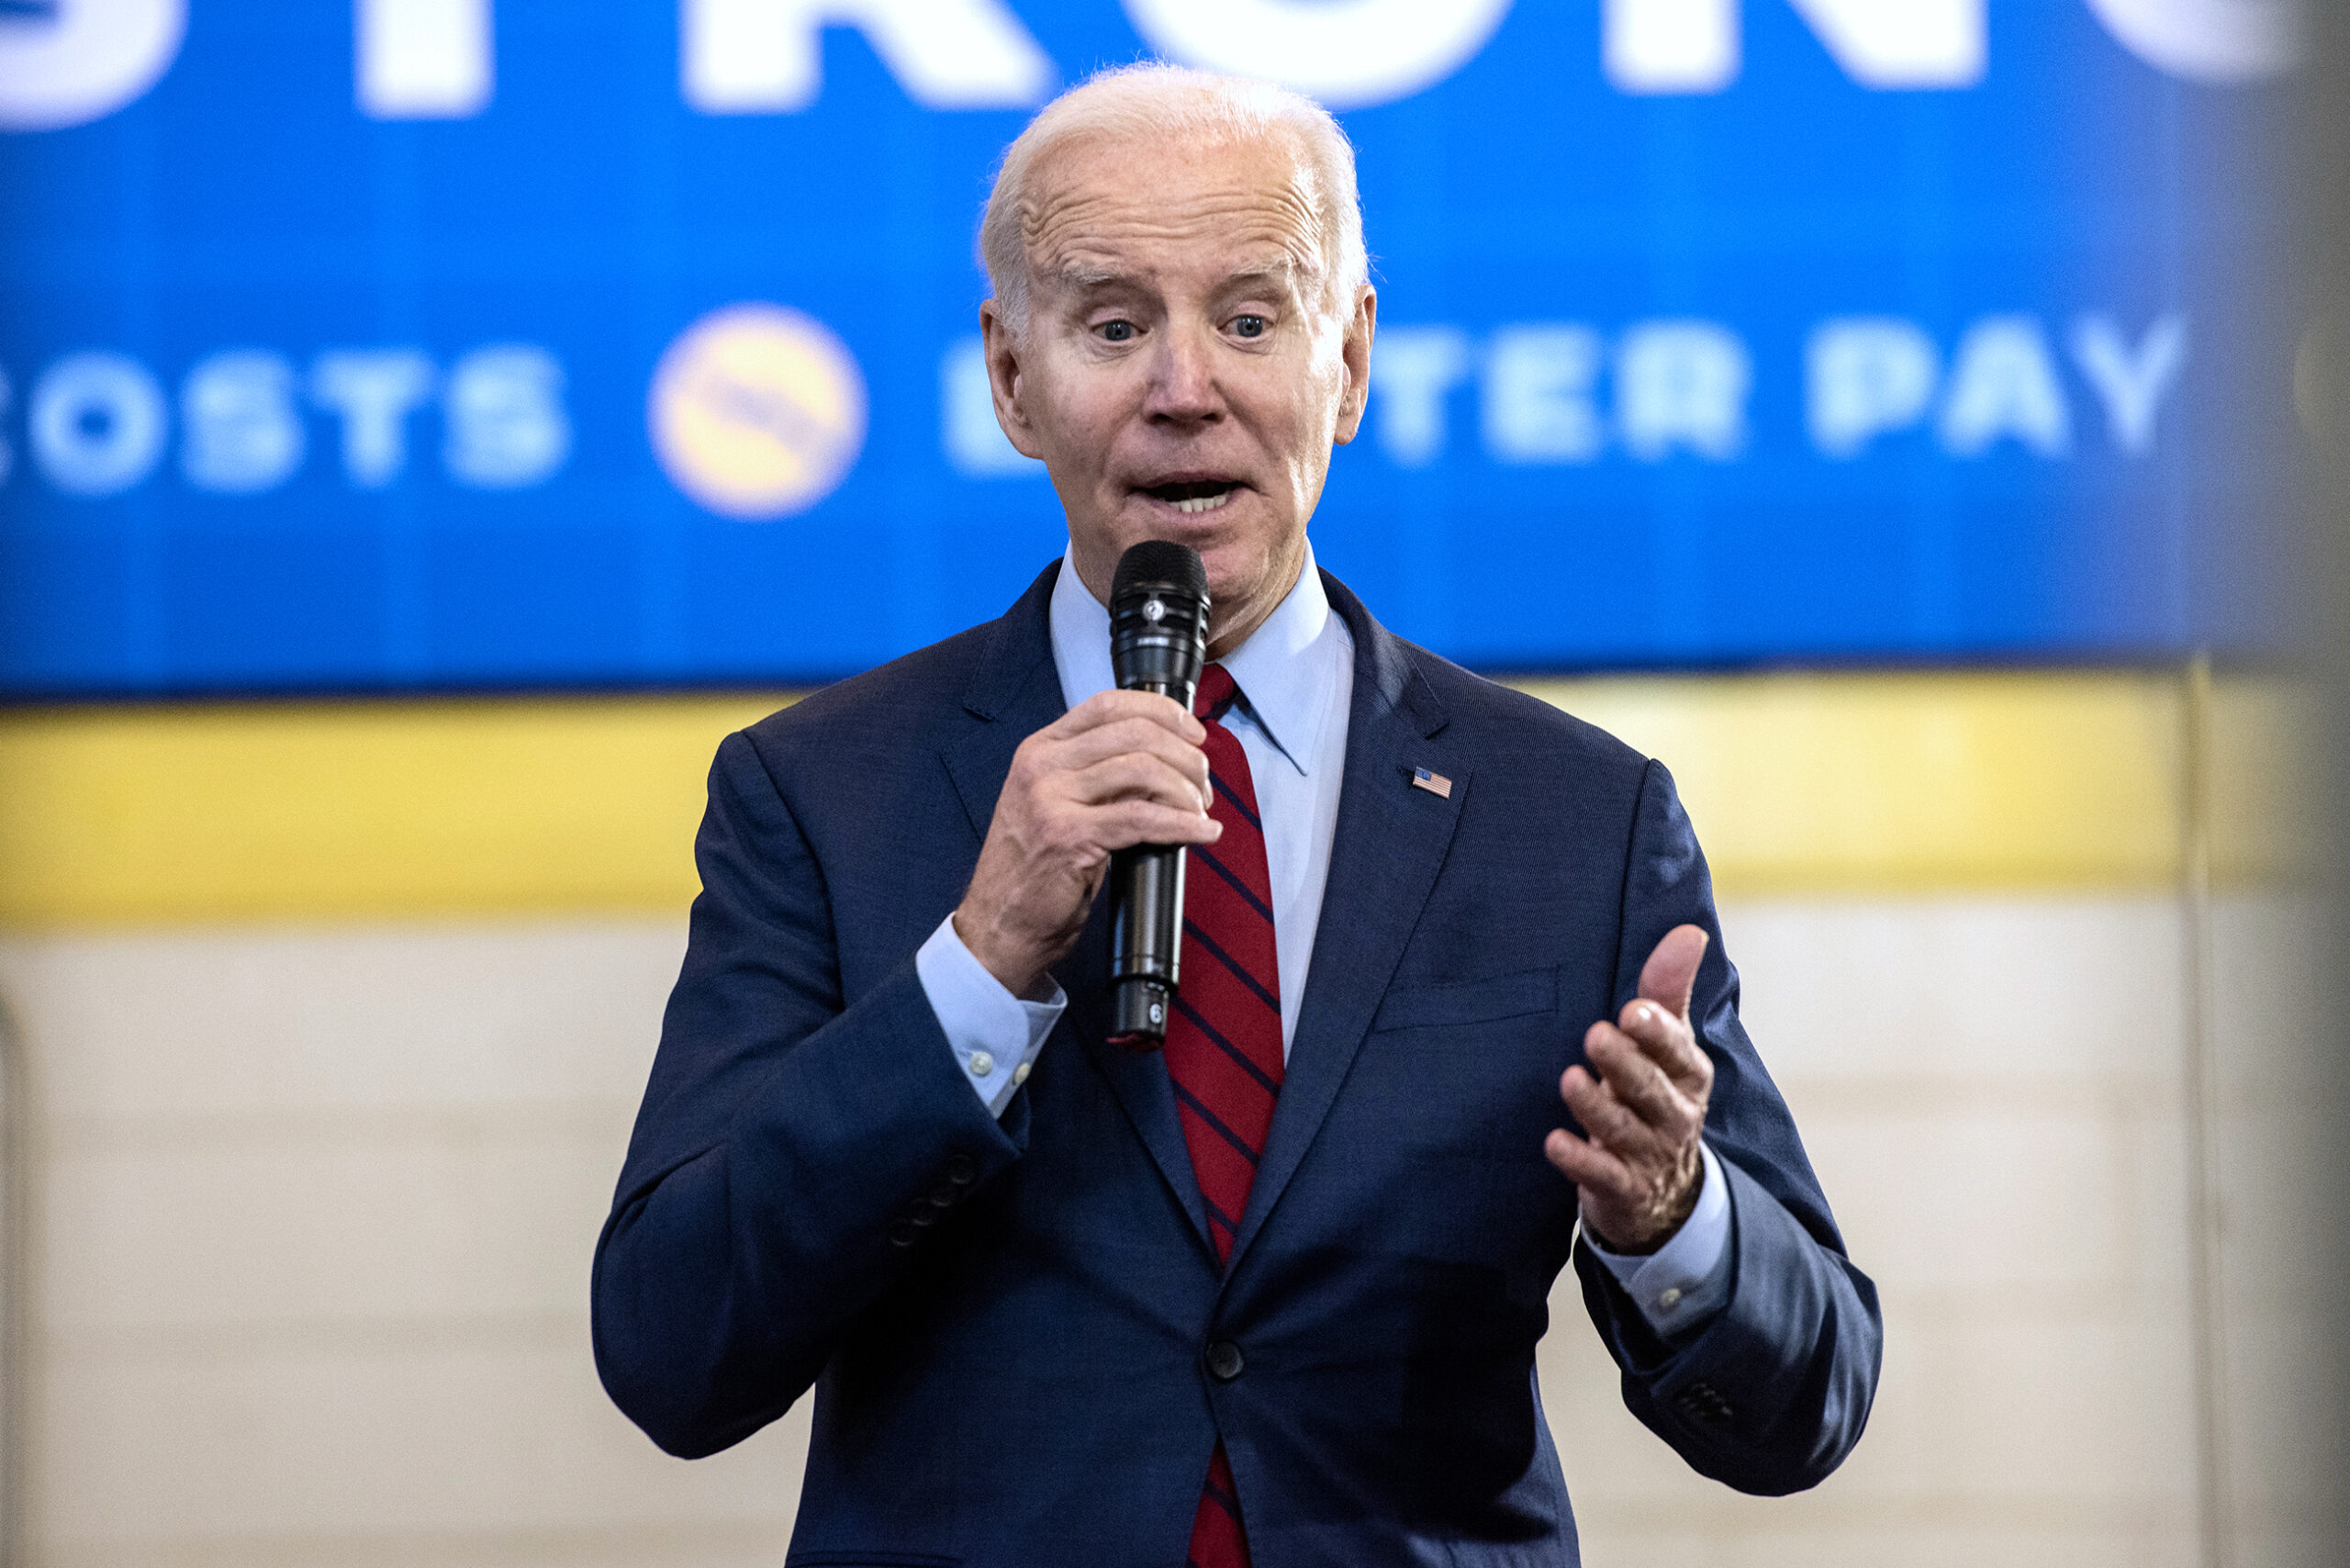 President Joe Biden gestures as he speaks into a microphone.